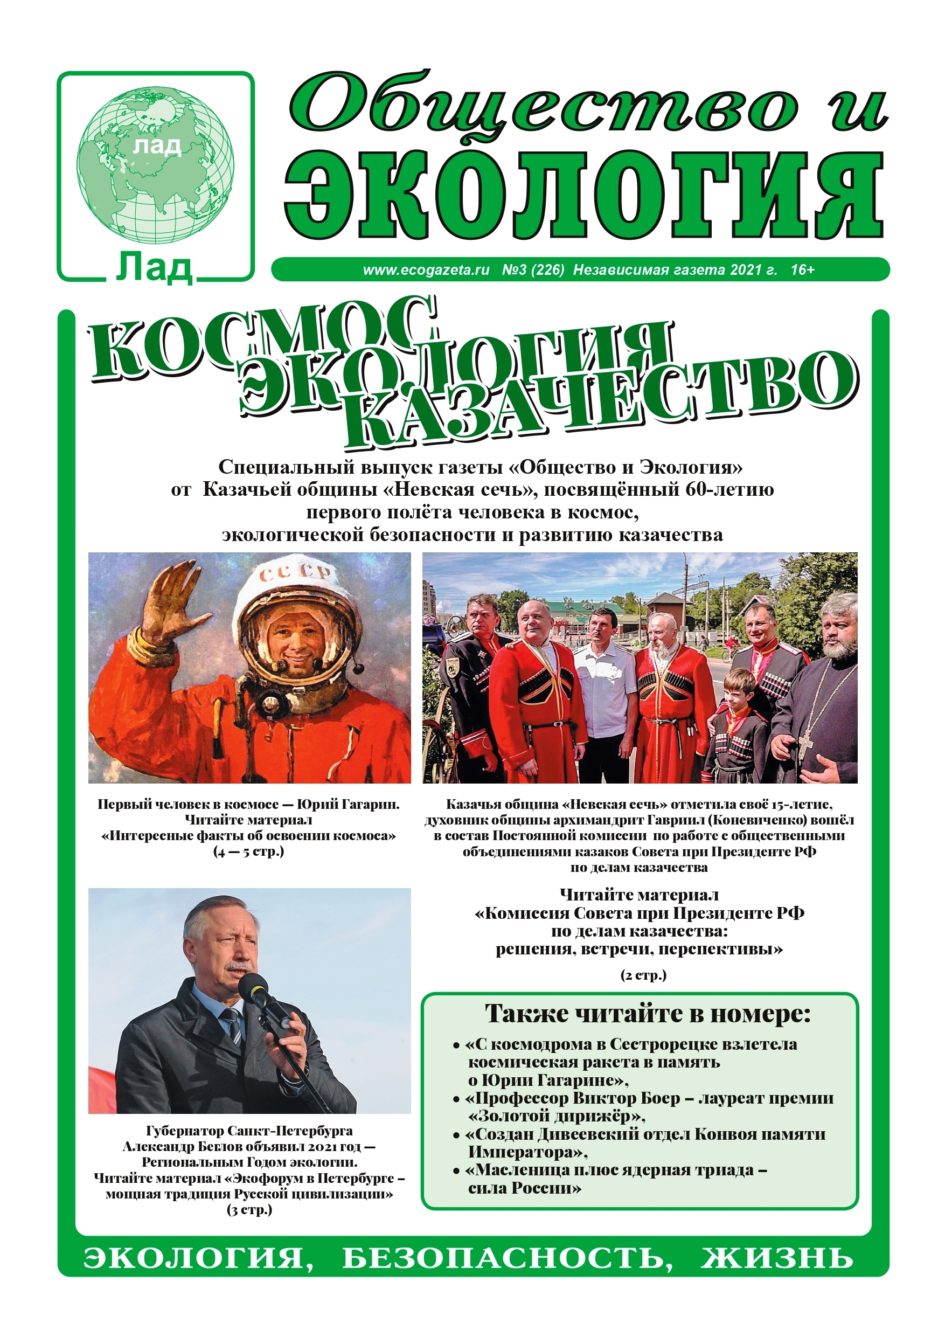 Kosmos Ecologia Kazachestvo № 3 (226) 03 04 2021 1